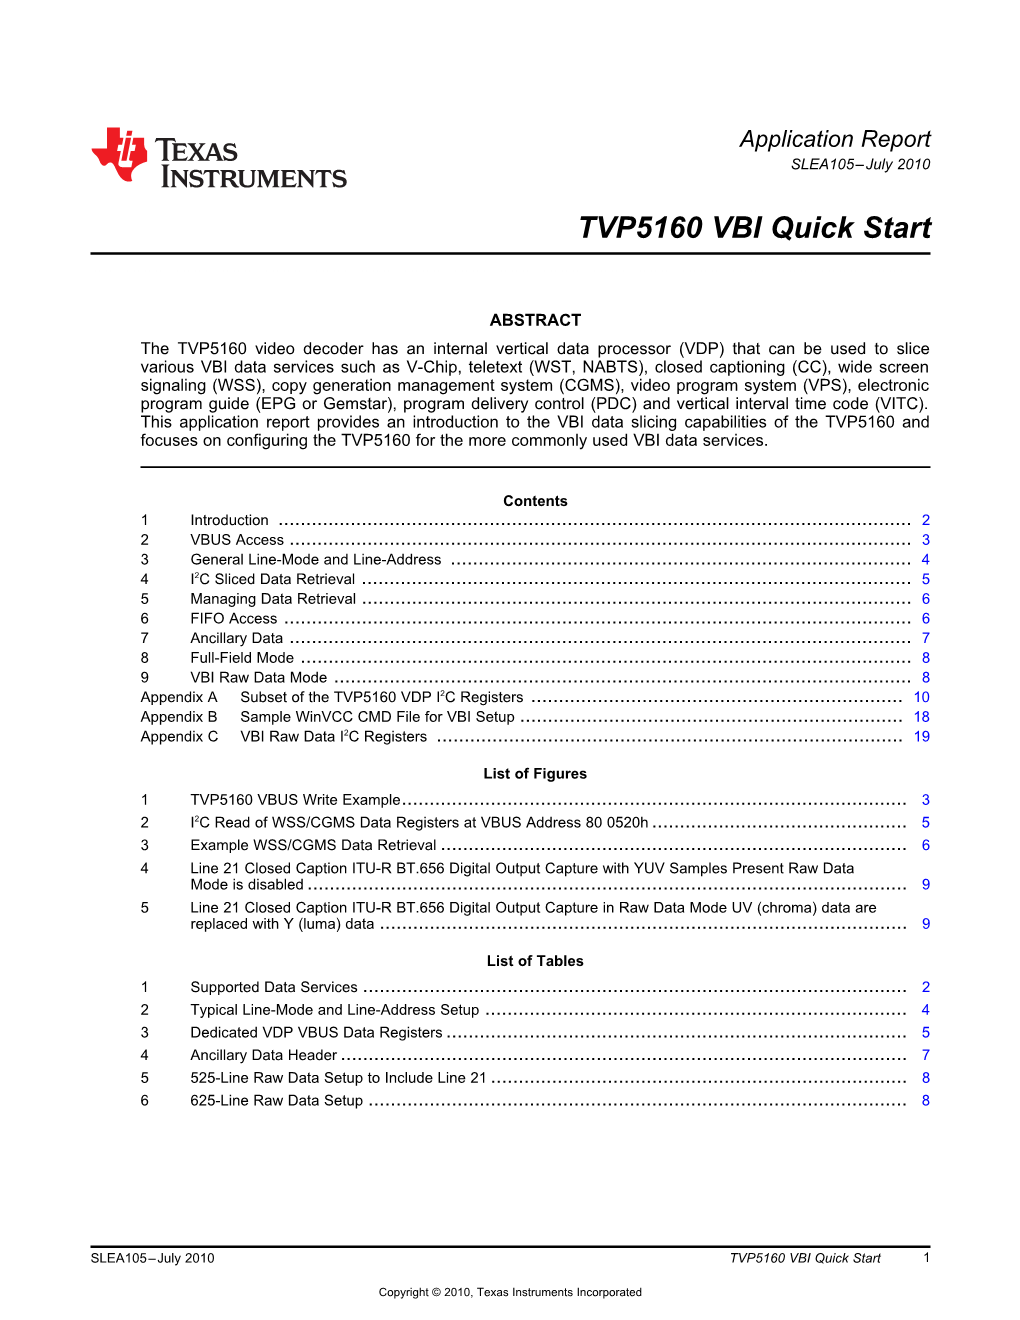 TVP5160 VBI Quick Start (Pdf, 252